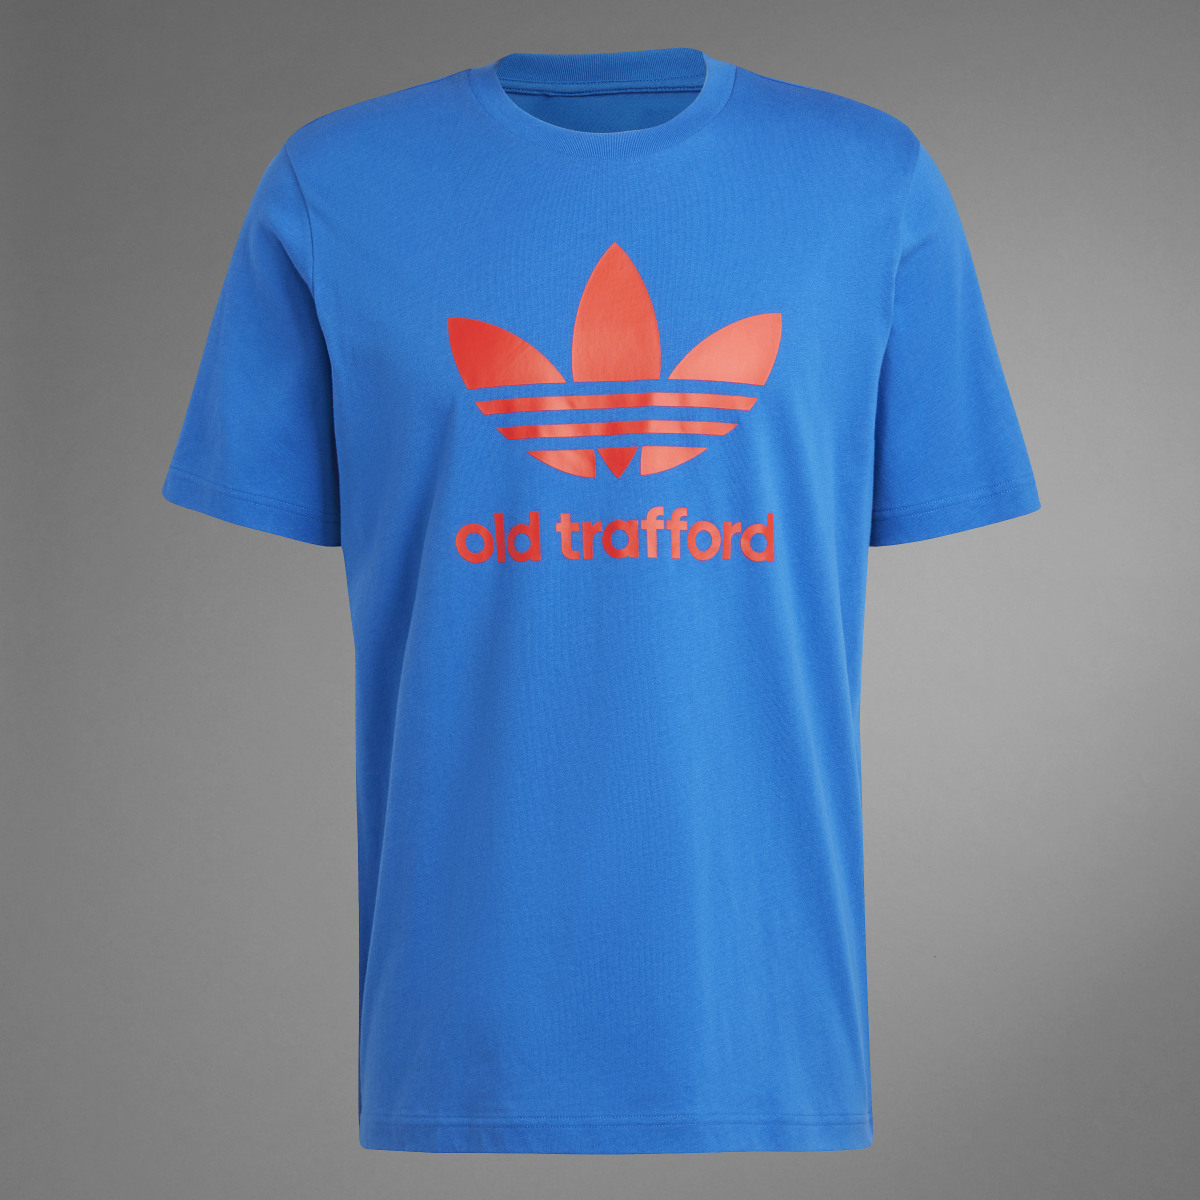 Adidas Manchester United OG Trefoil T-Shirt. 10